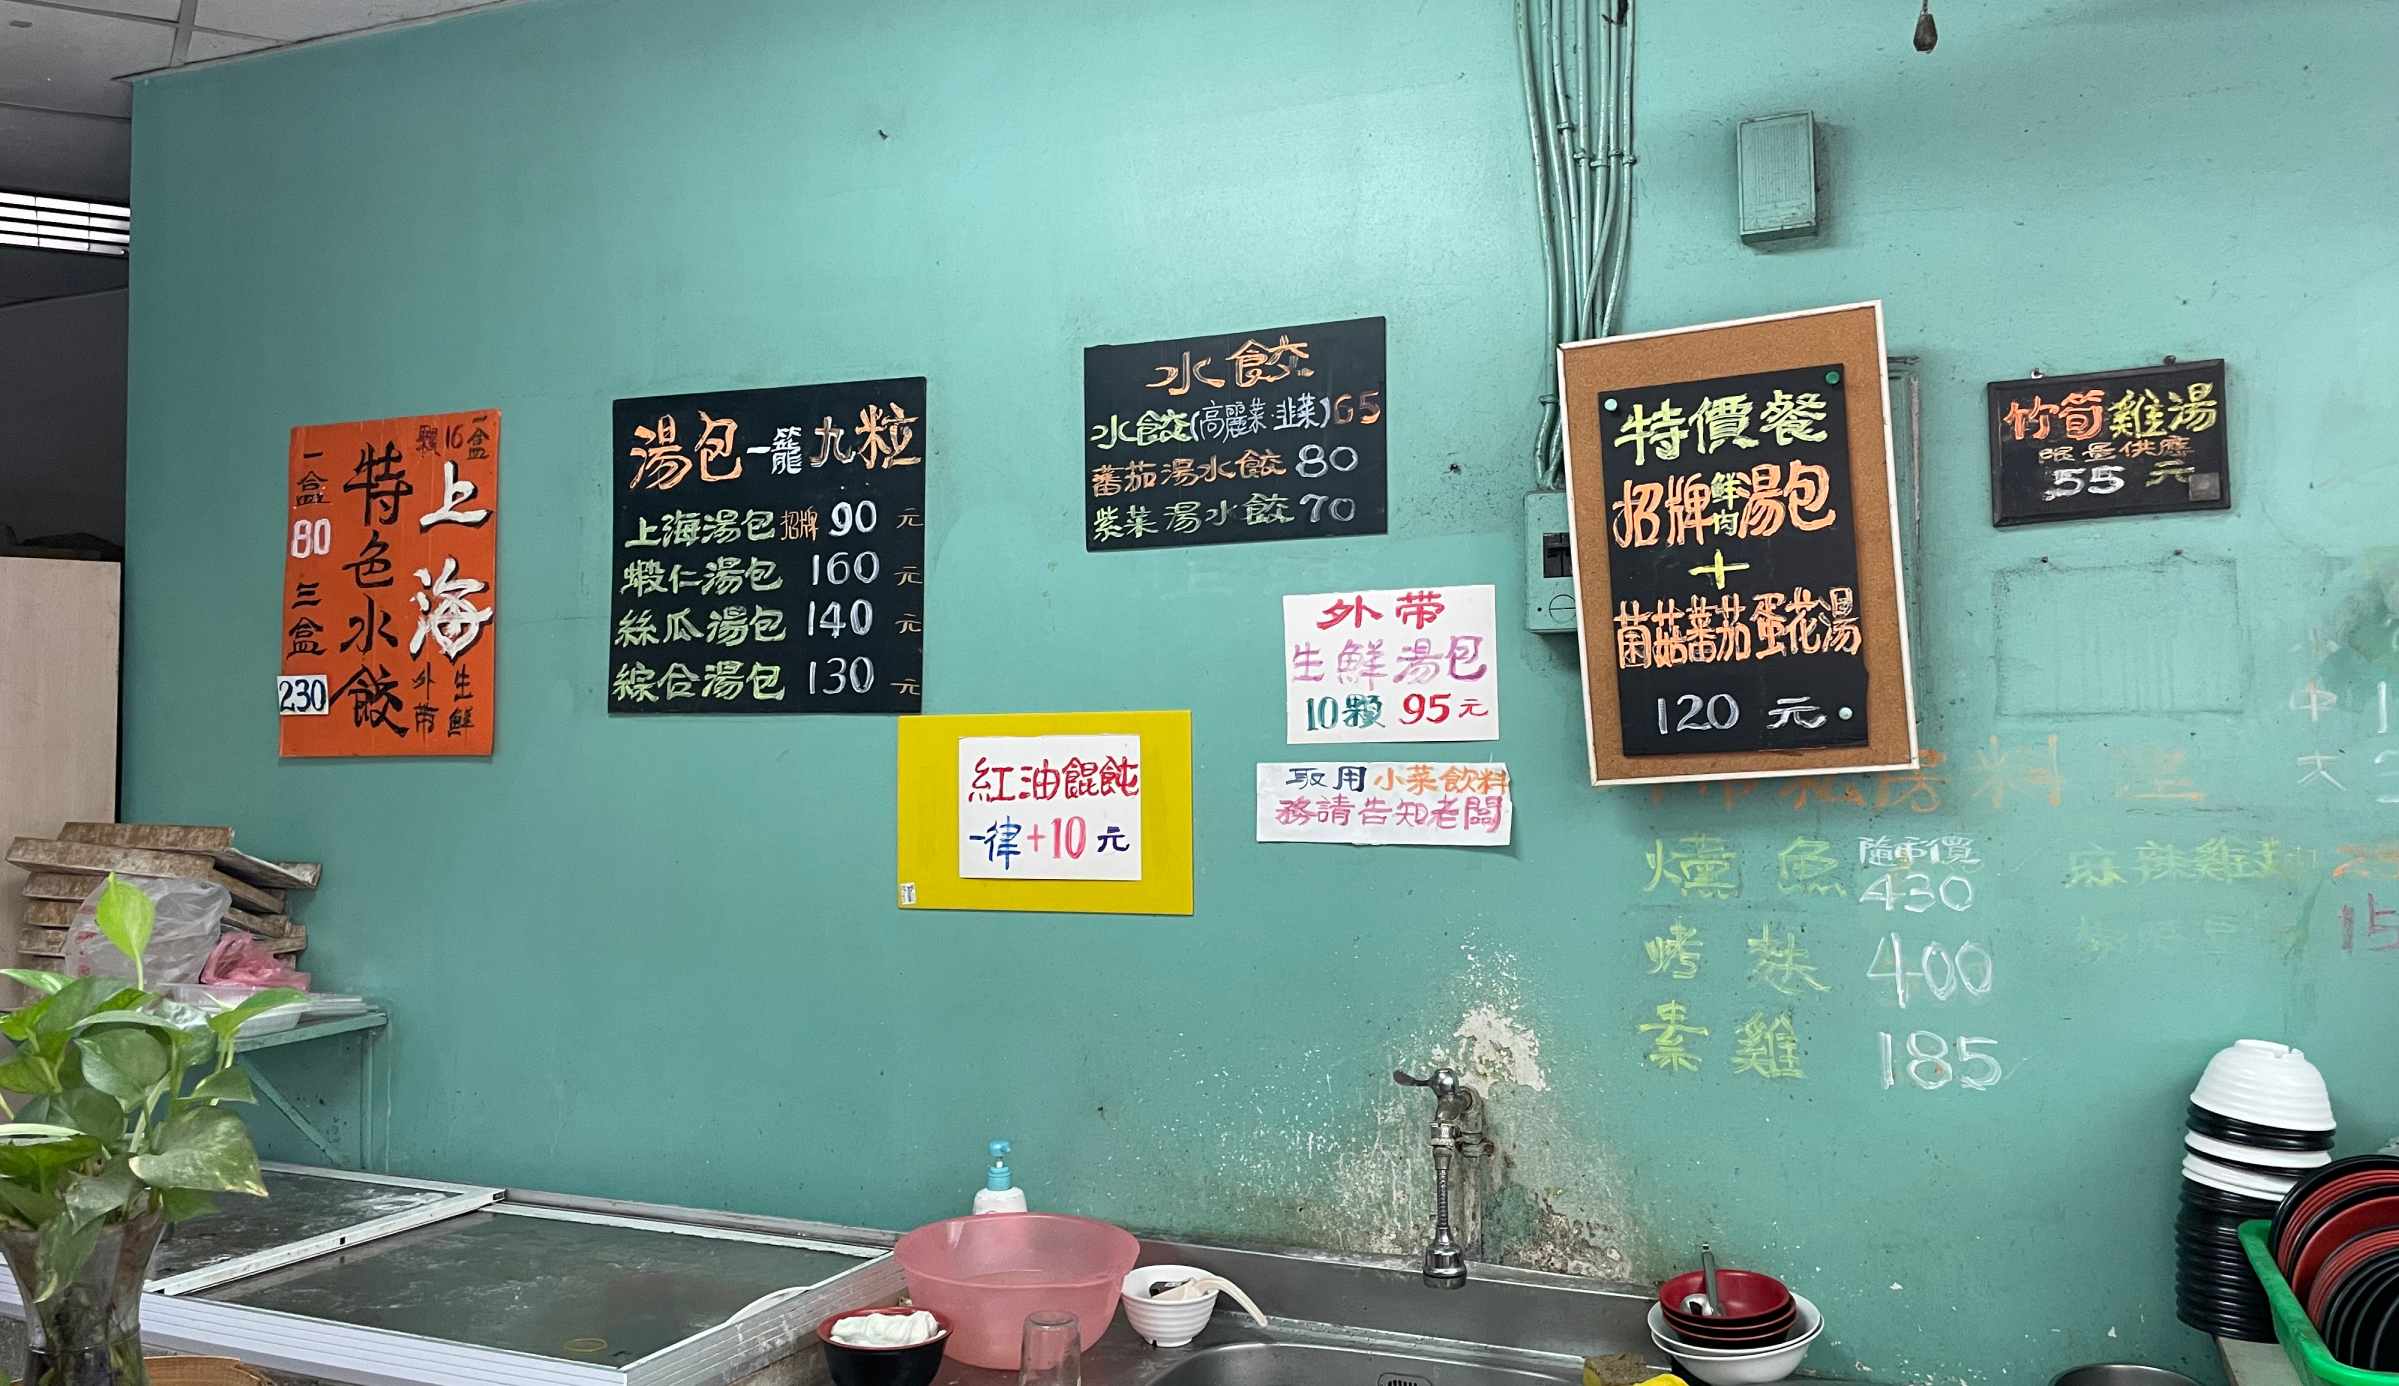 新莊美食, 上海小龍湯包, 輔大學生美食, 新莊上海小籠湯包, 方記上海小籠湯包